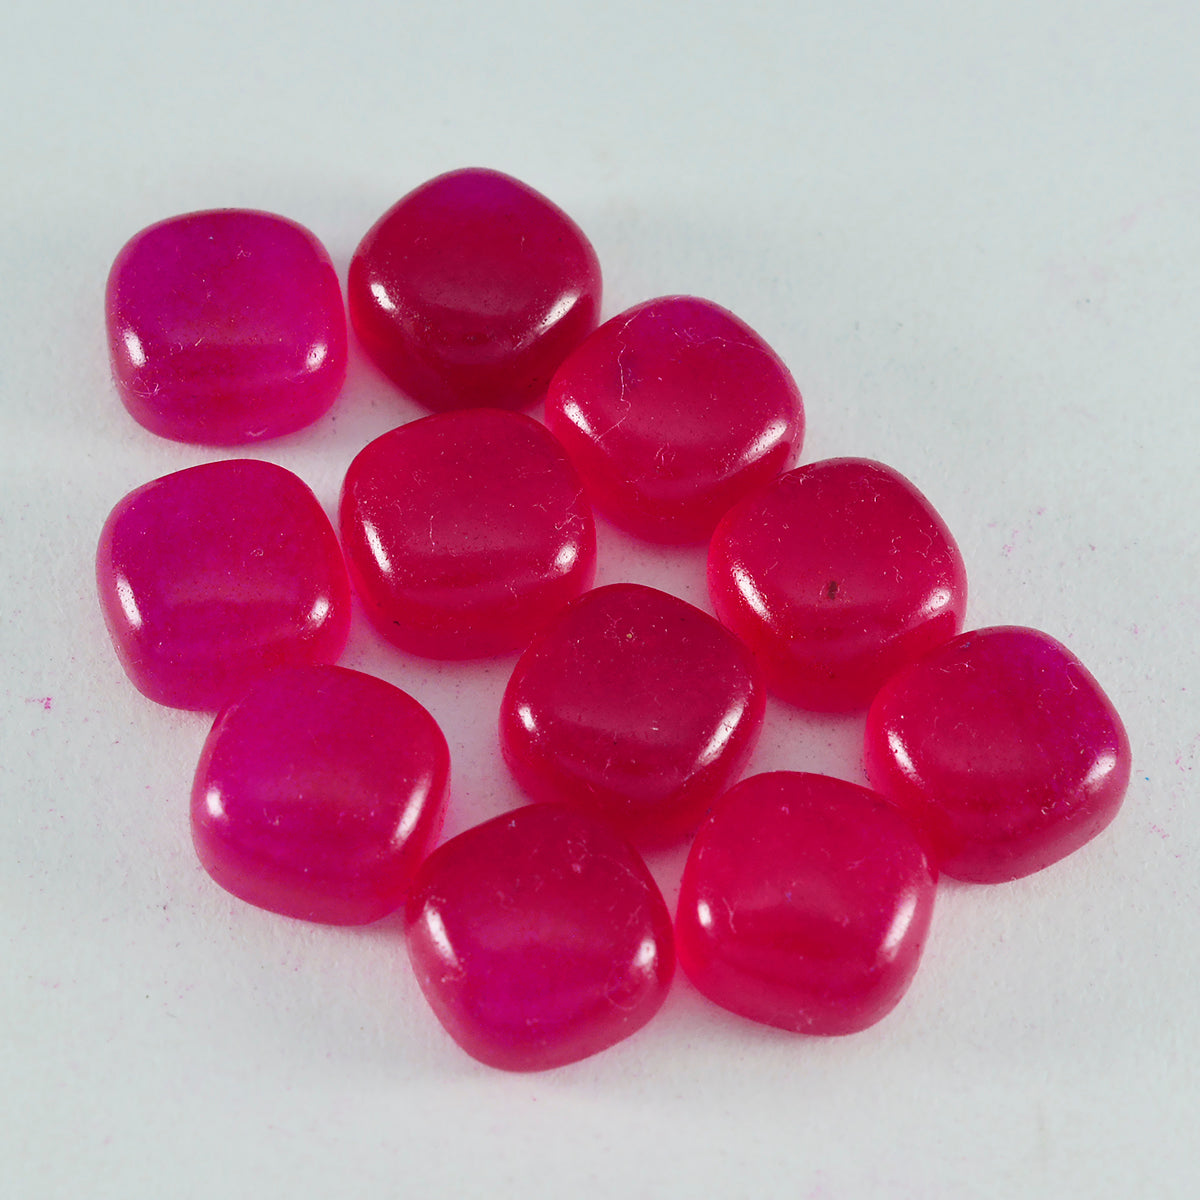 Riyogems 1 pieza cabujón de jaspe rojo 6x6 mm forma de cojín gemas de calidad increíble